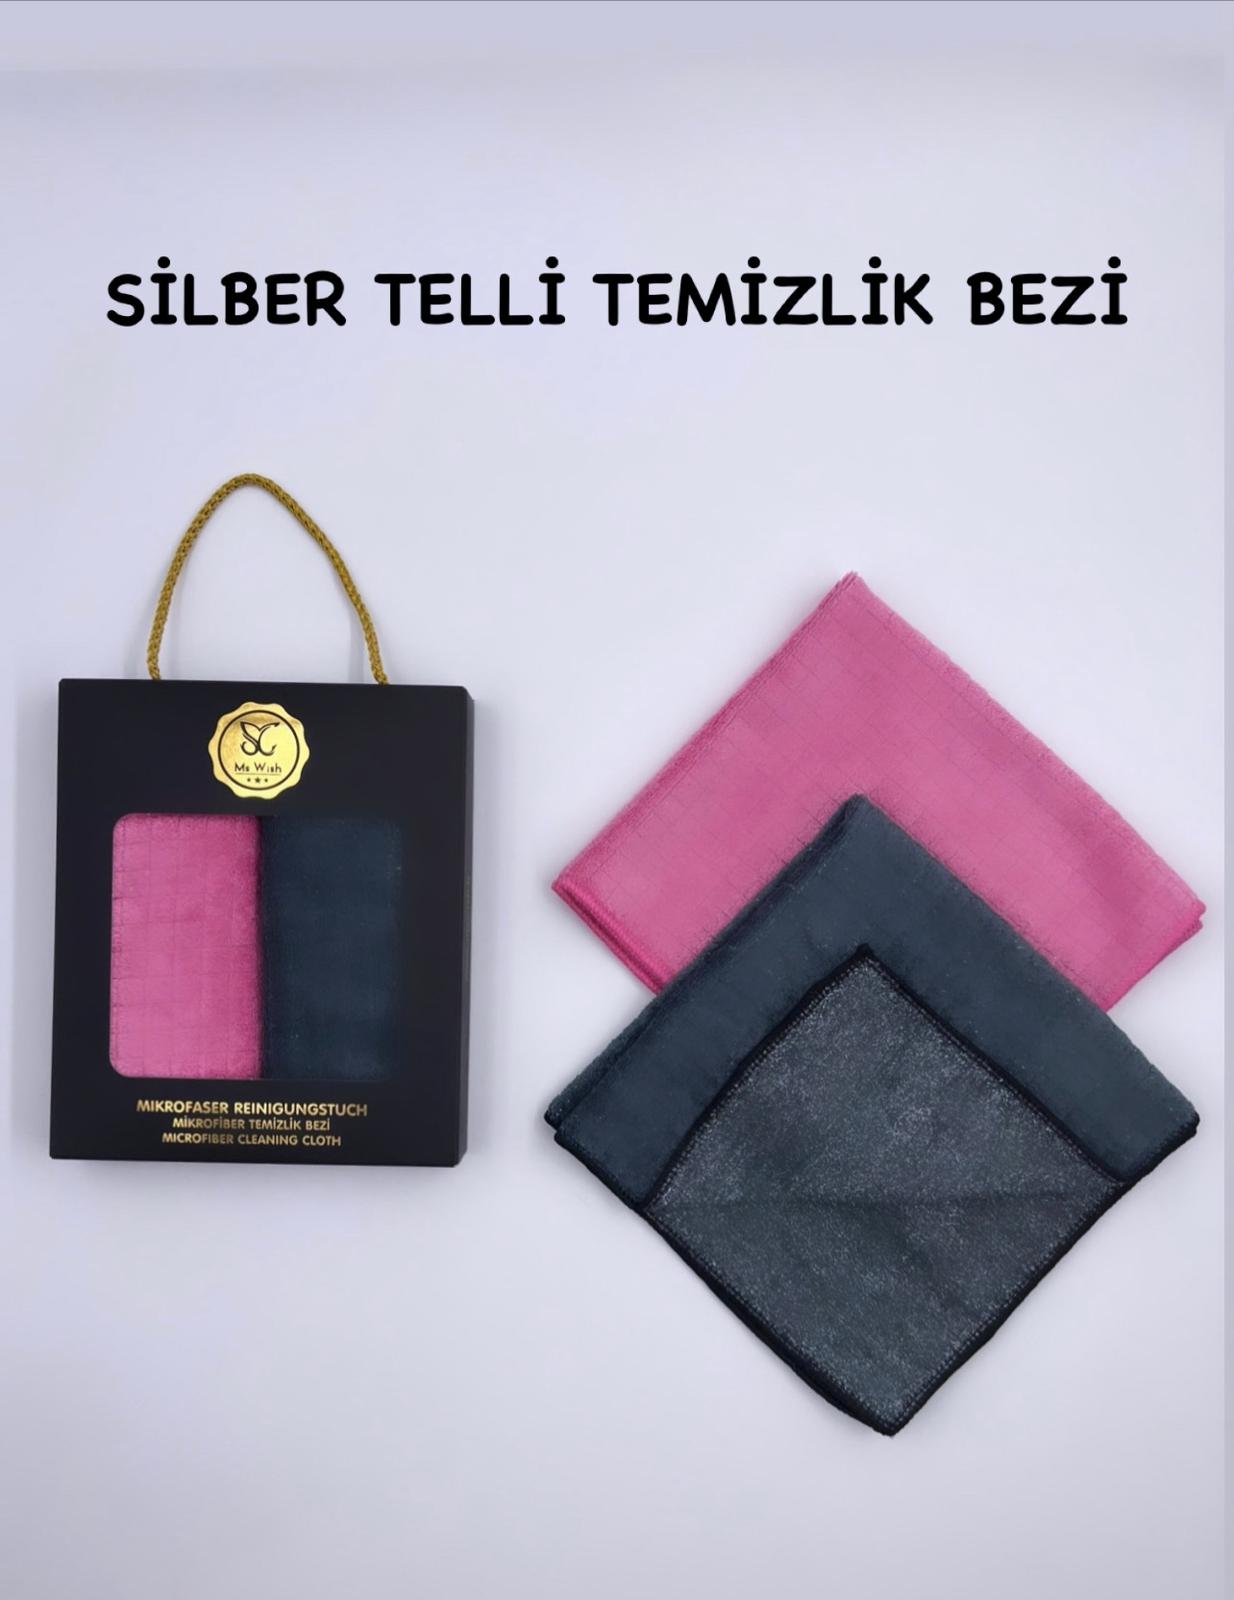 Ms Wish Şeyma Çetin Silber Telli Temizlik Bezi S Pembe - Gri 2'li 42 x 68 CM